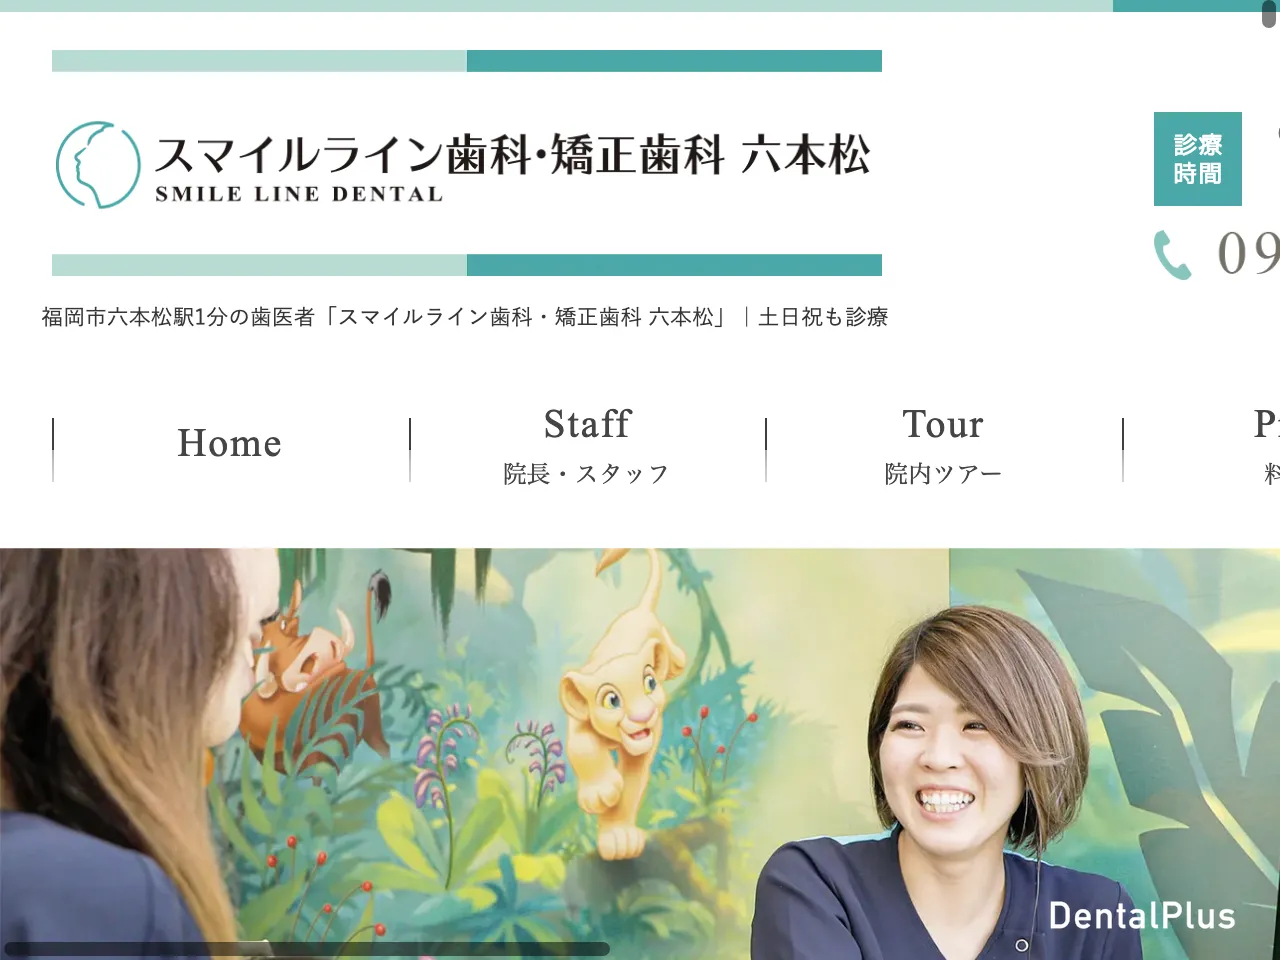 スマイルライン歯科・矯正歯科六本松のウェブサイト